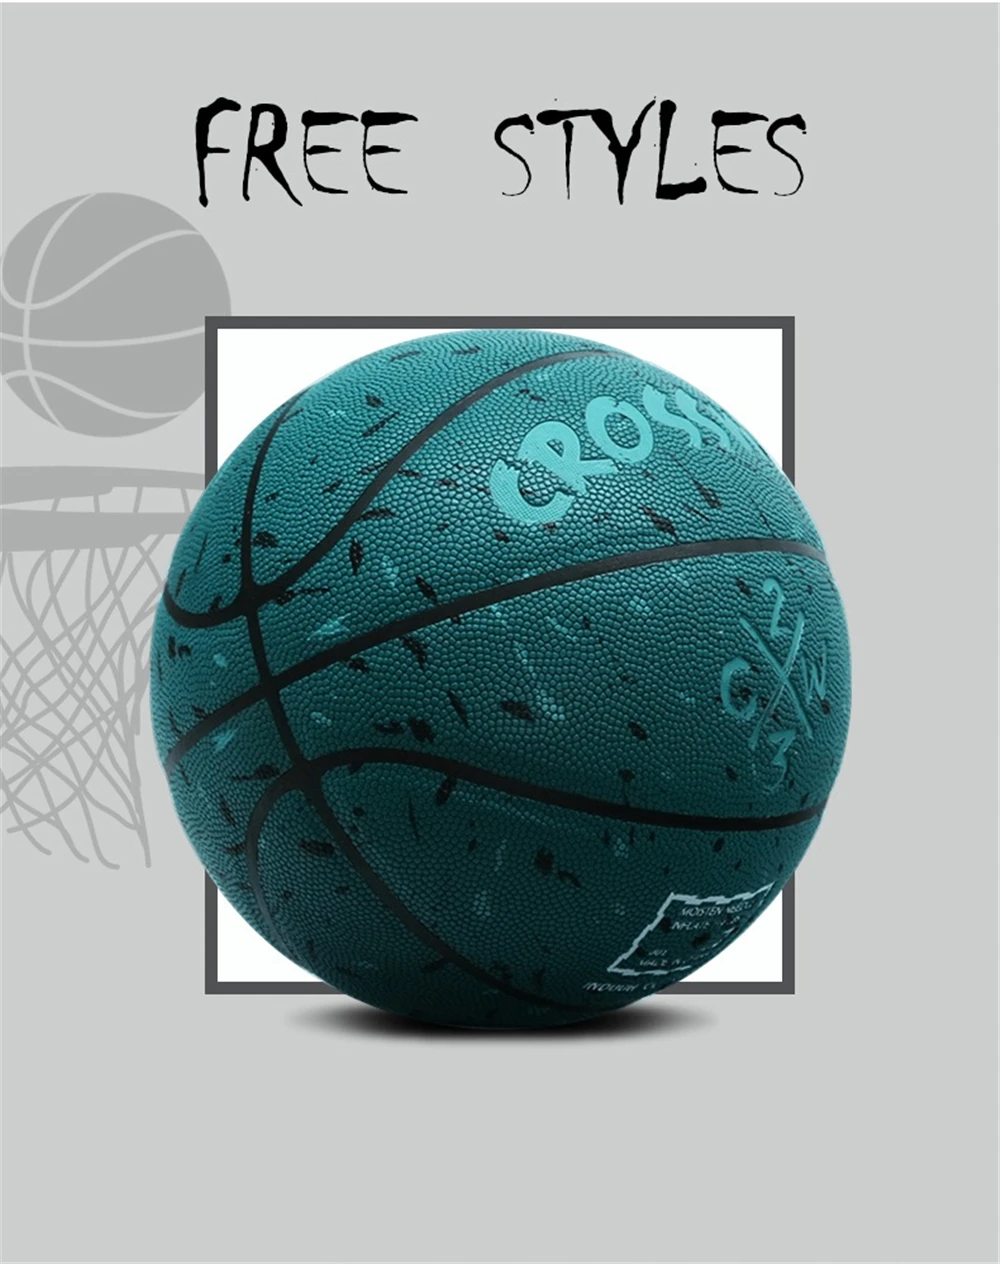 2018 Лидер продаж Качество Новый Баскетбол Открытый Крытый кожа Баскетбол мяч PU обучение Конкурс Размер 7 мяч